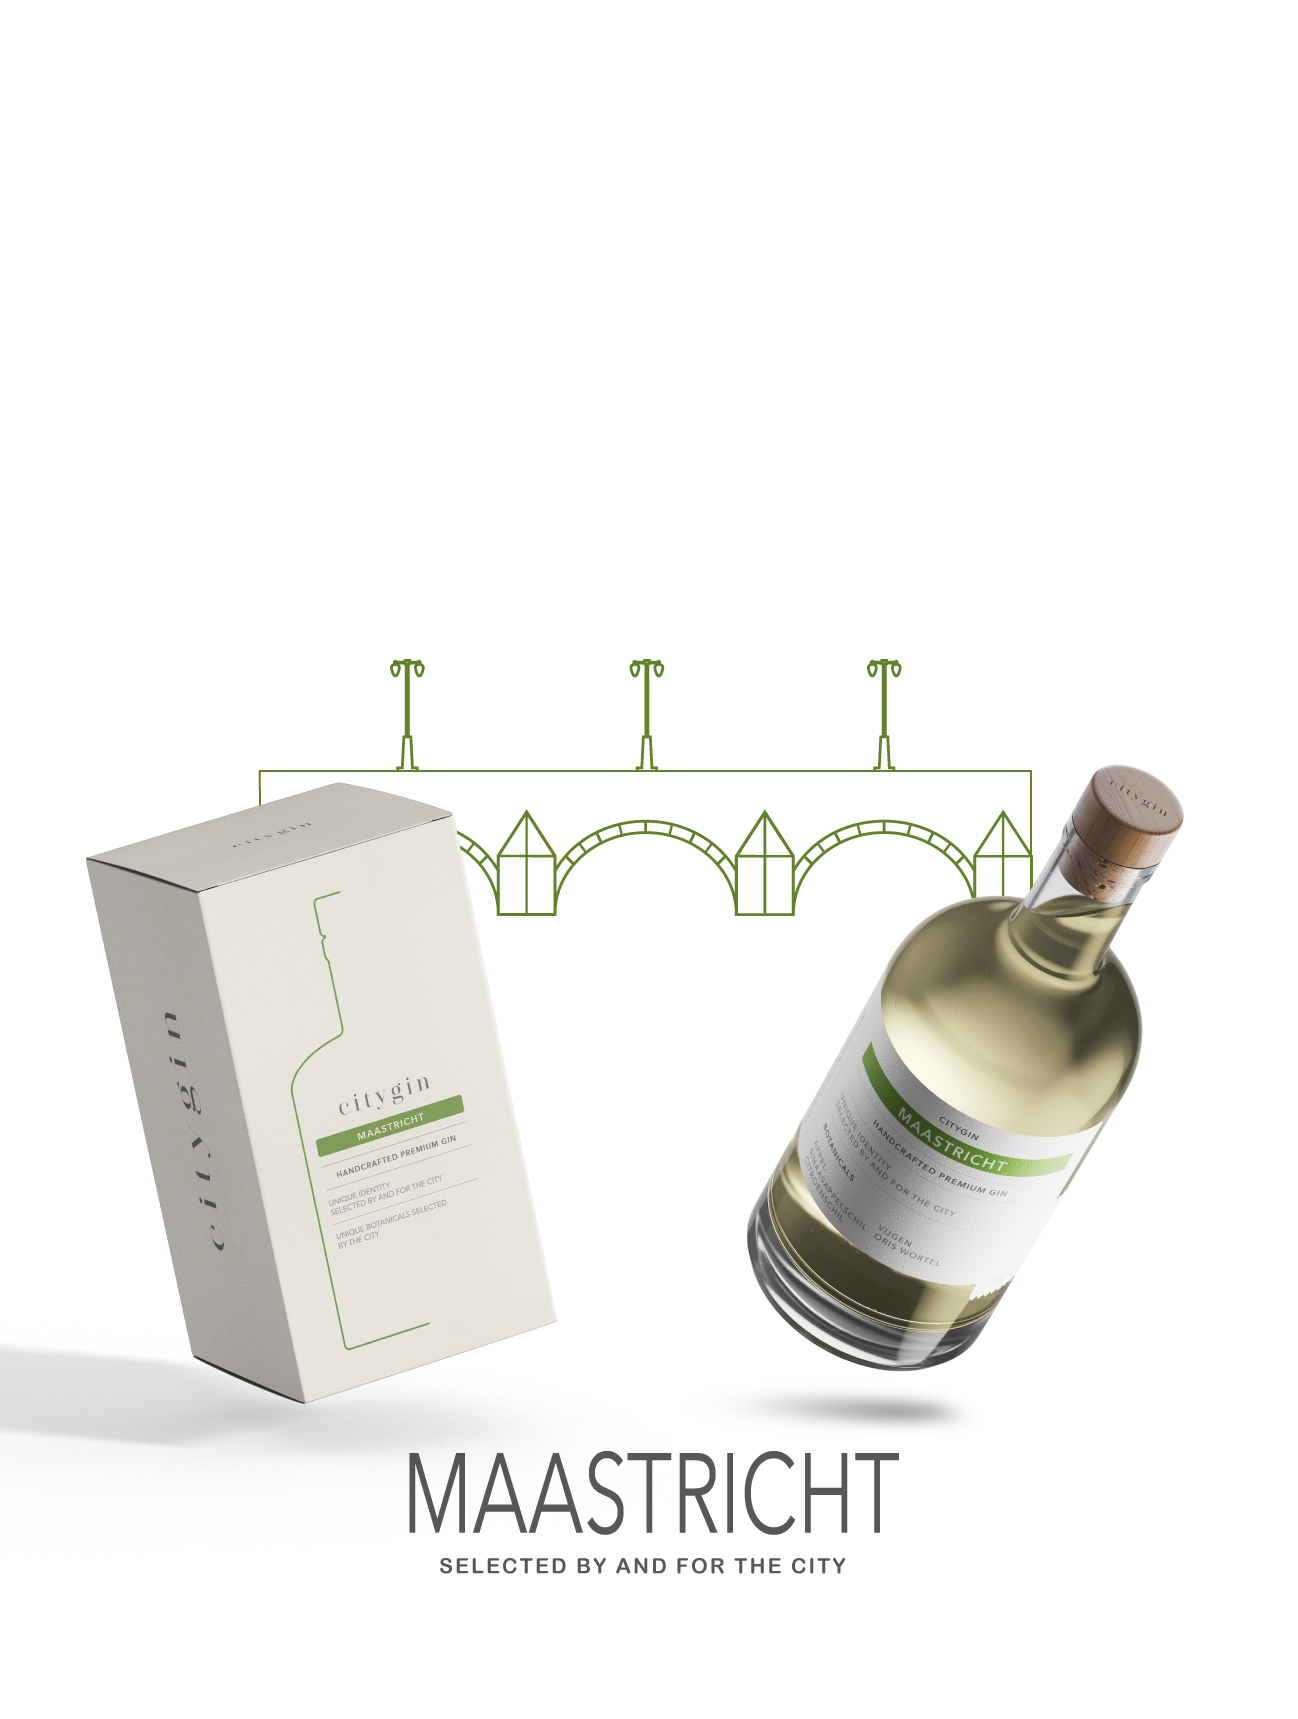 Maastricht gin